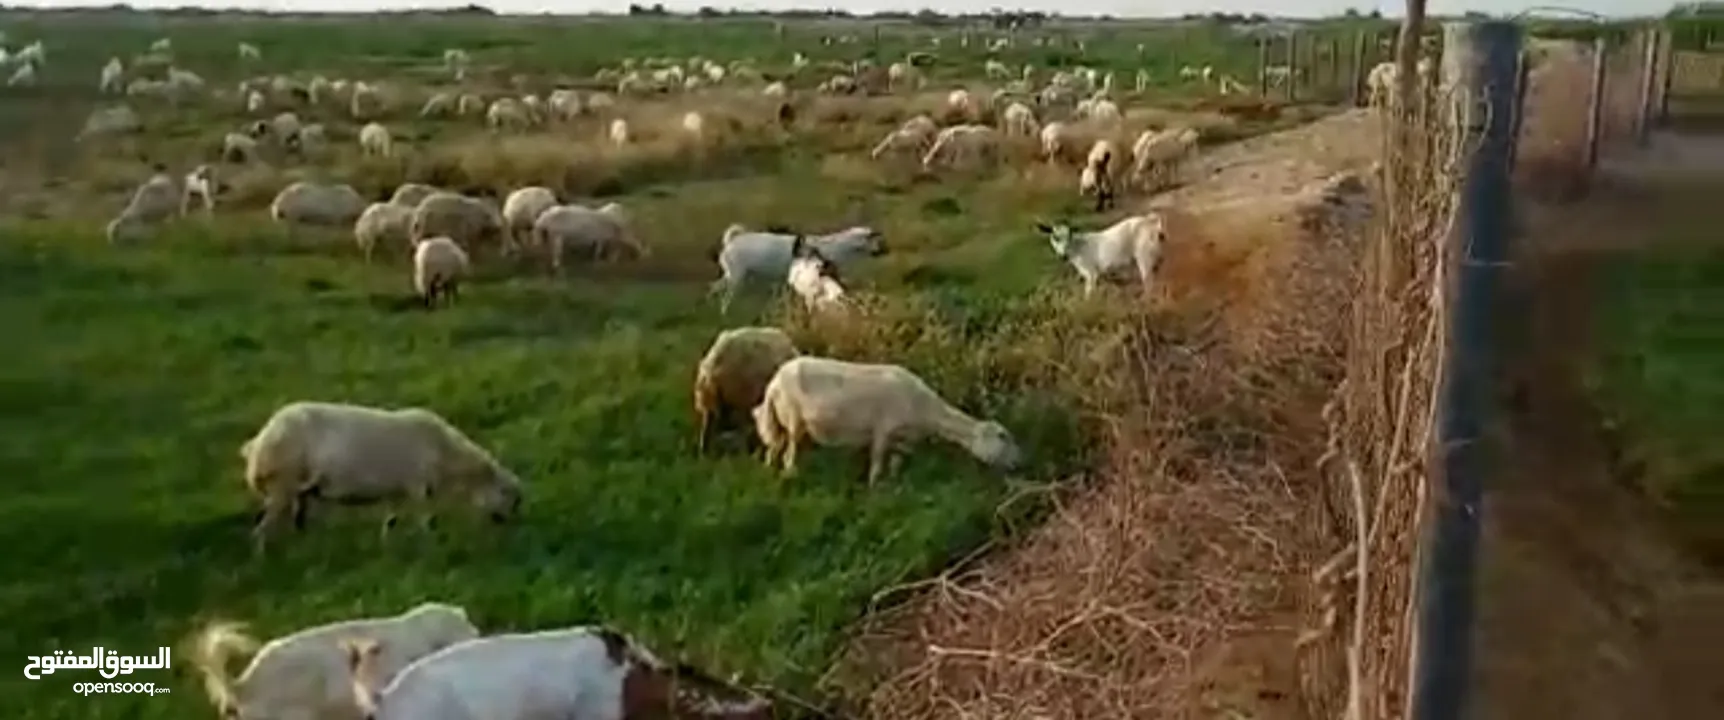 27معاد مزرعه مواشي في وادي مور للبيع